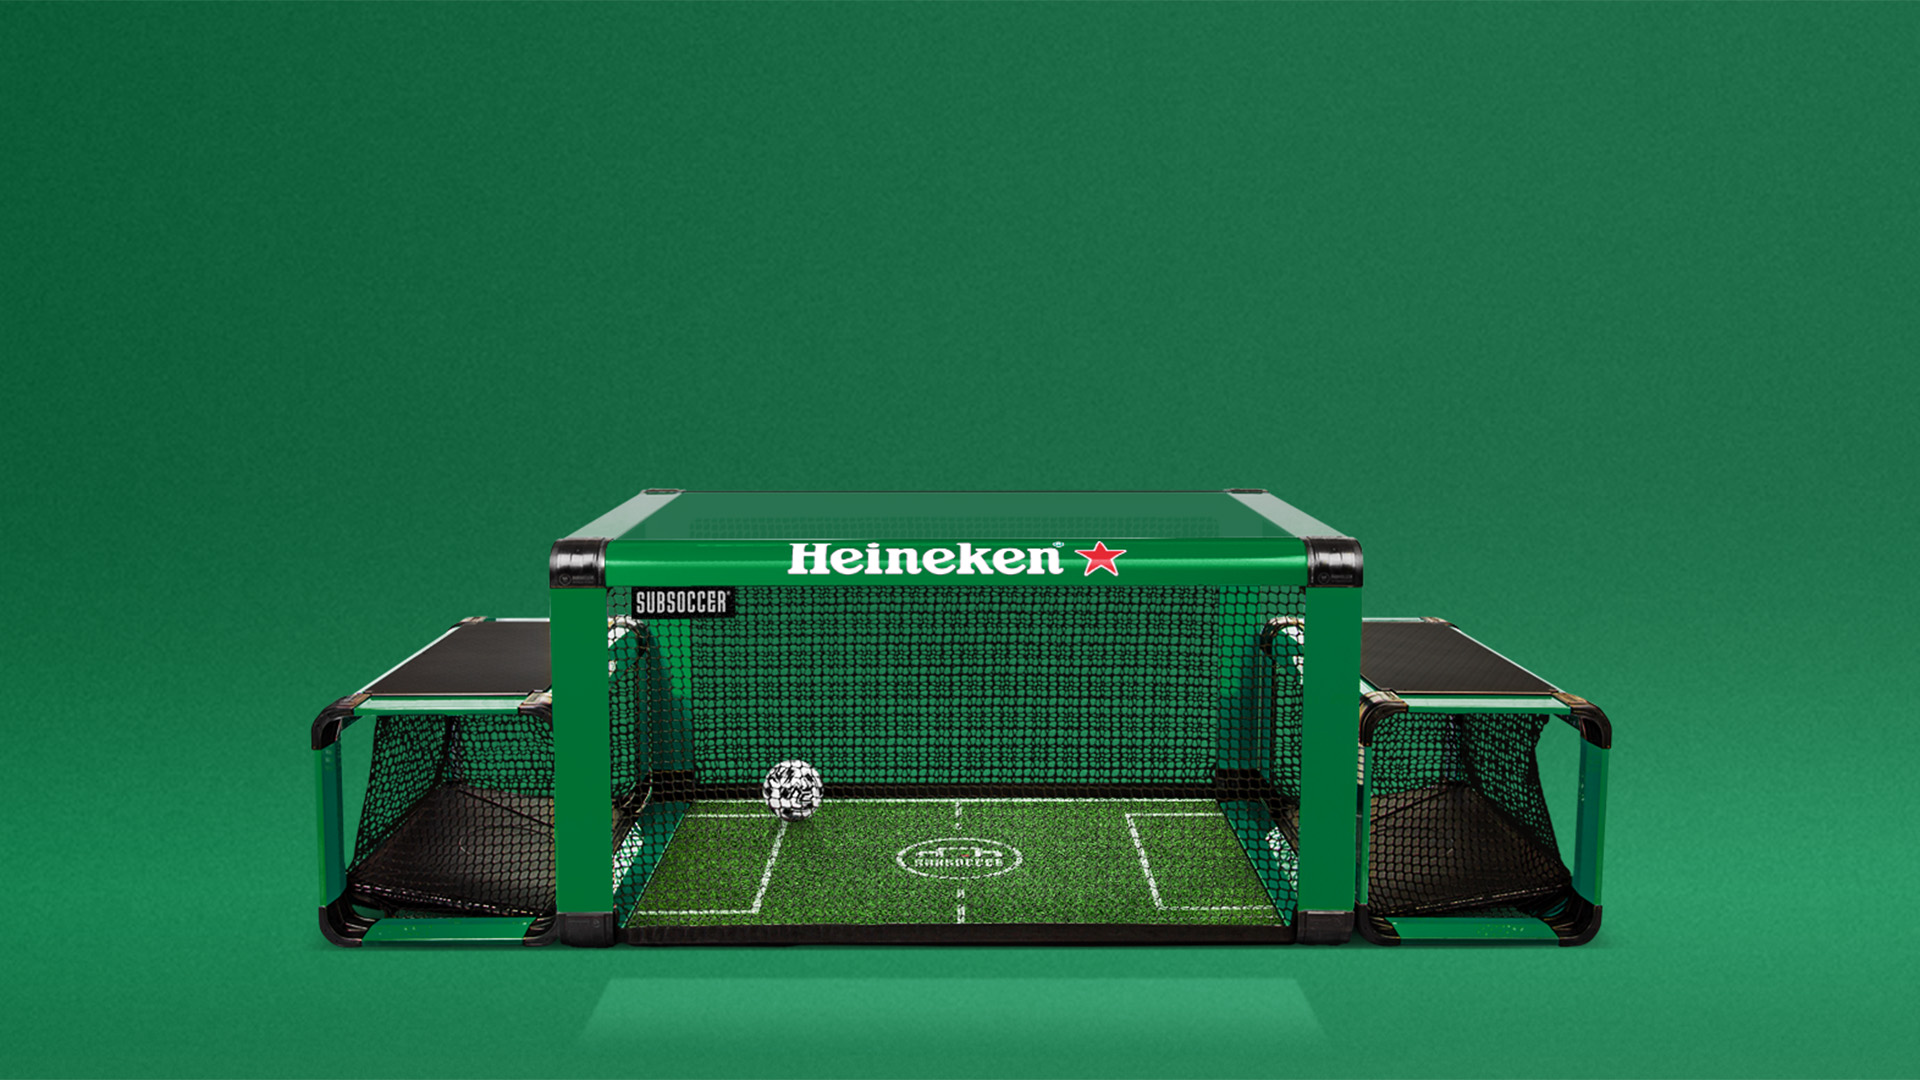 Heineken Subsoccer bolzbox tablefootball game